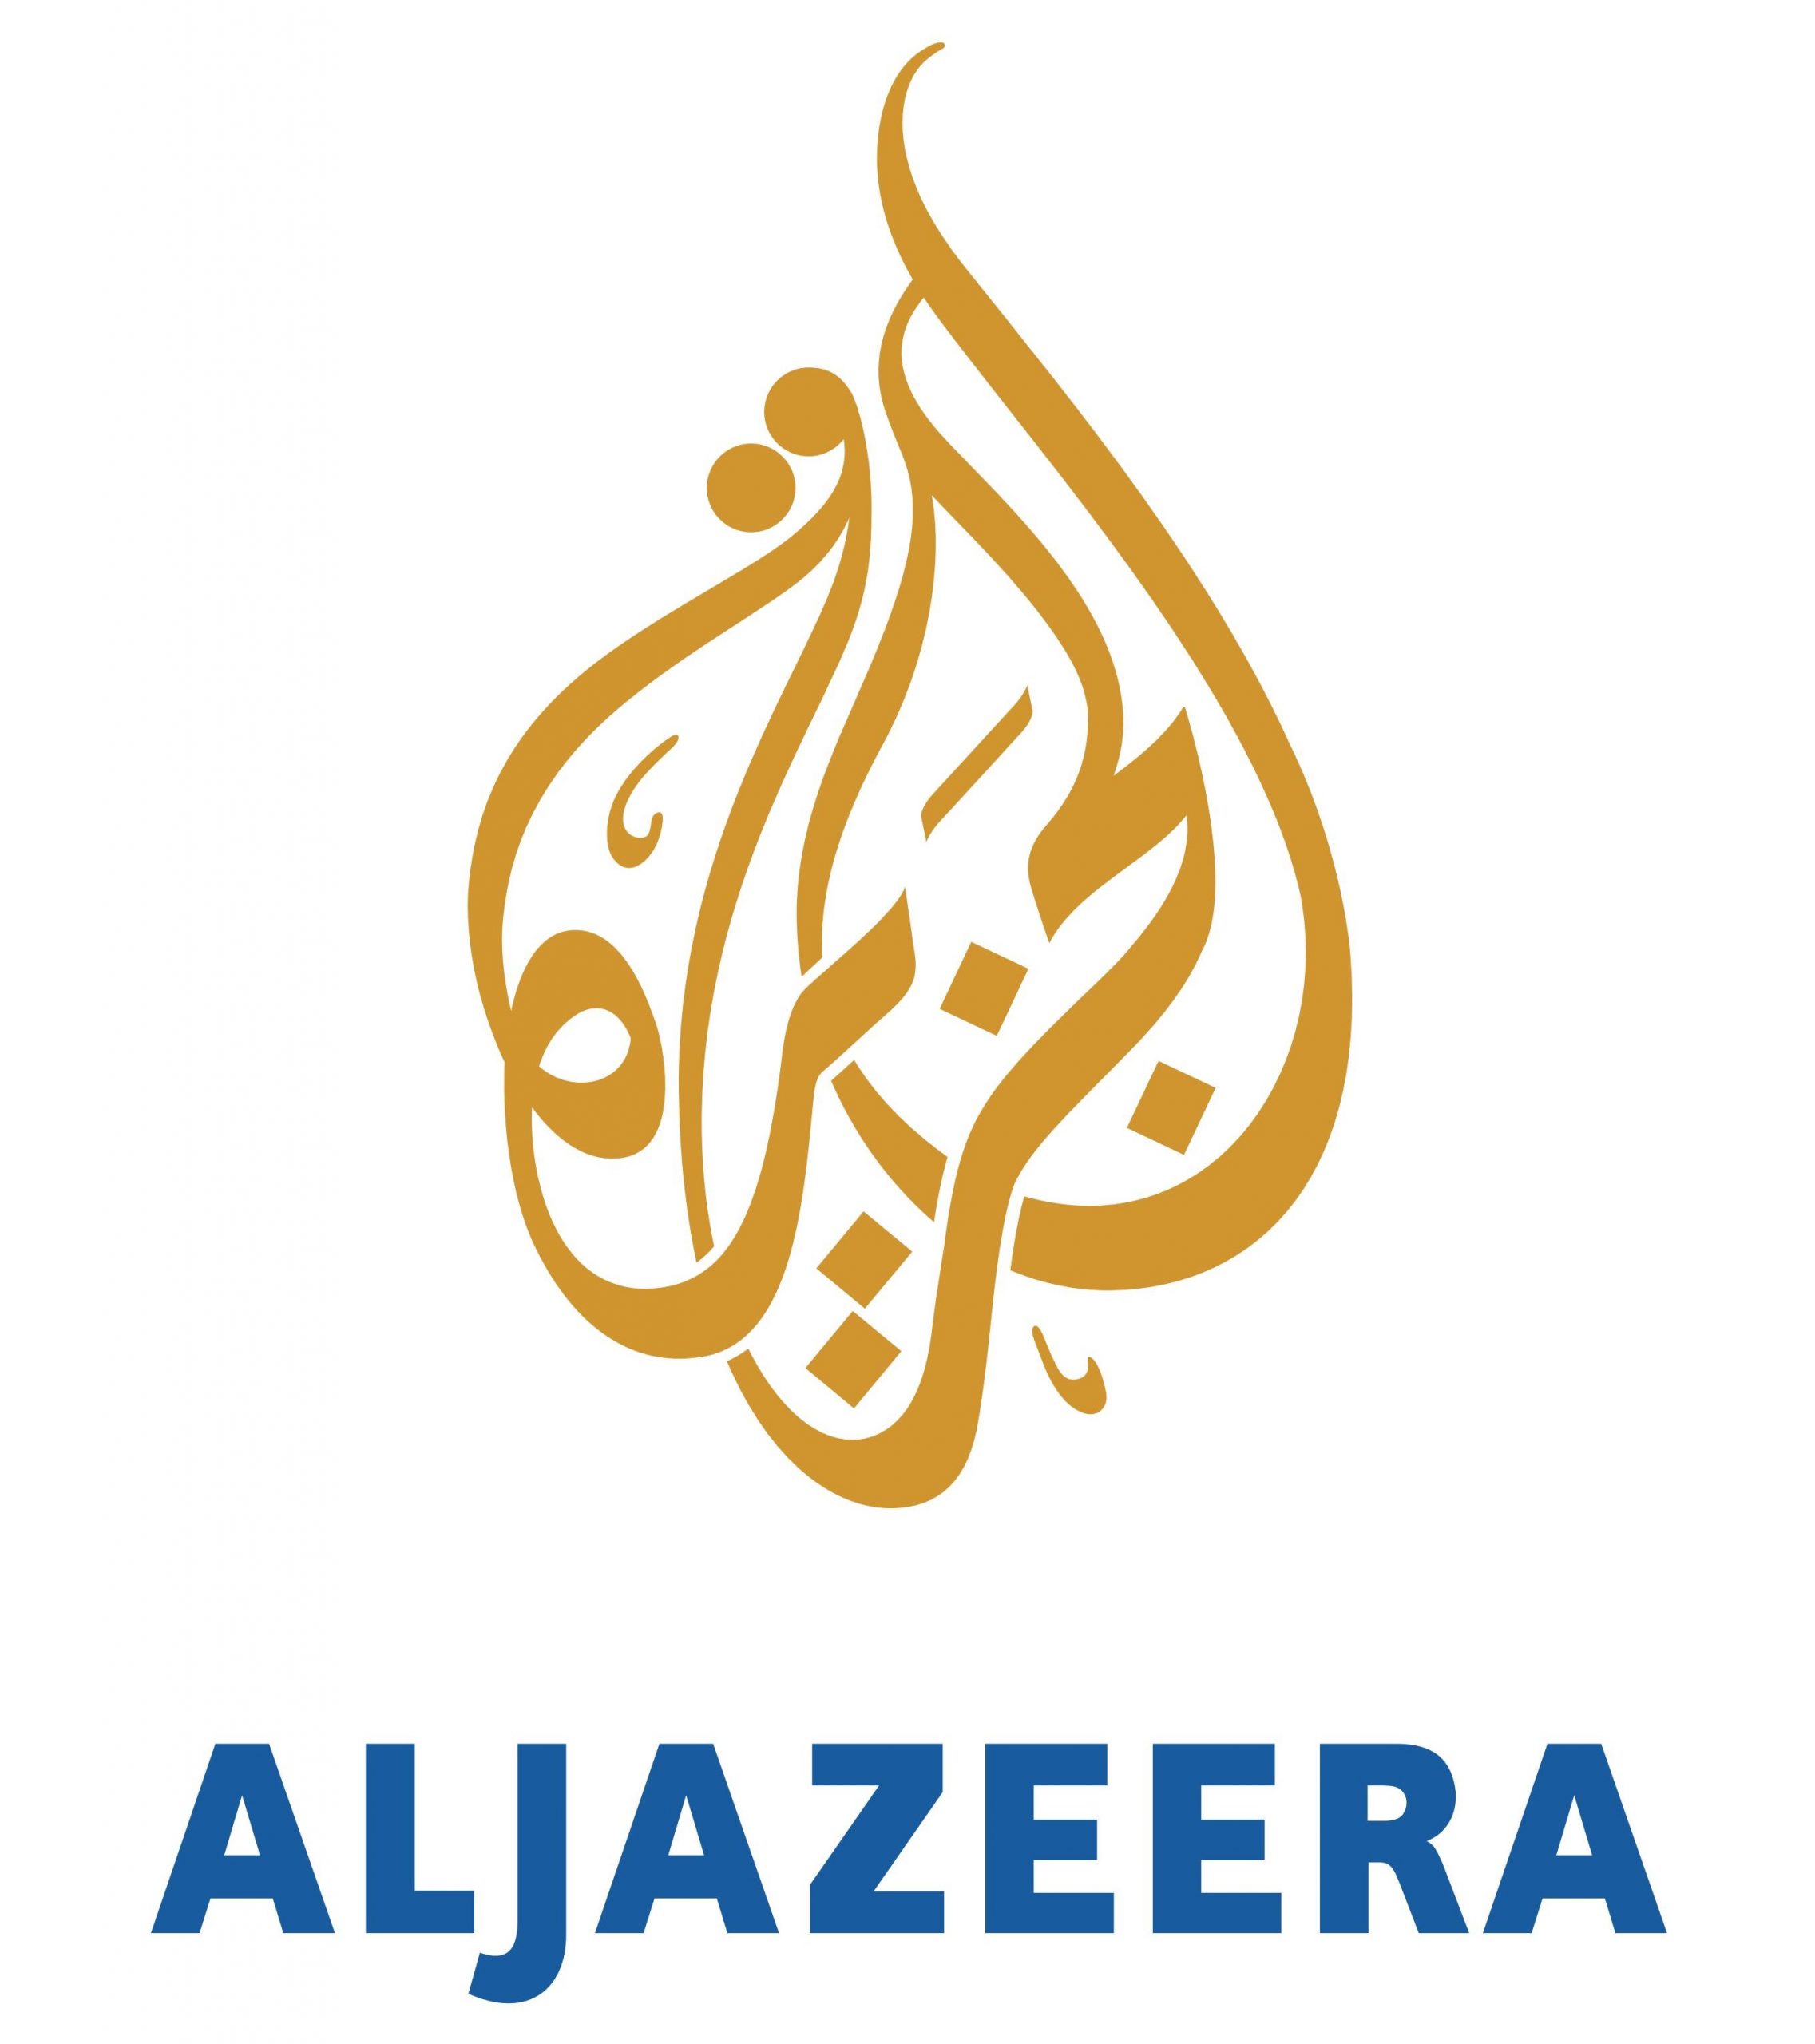 تردد قناة الجزيرة الإخبارية